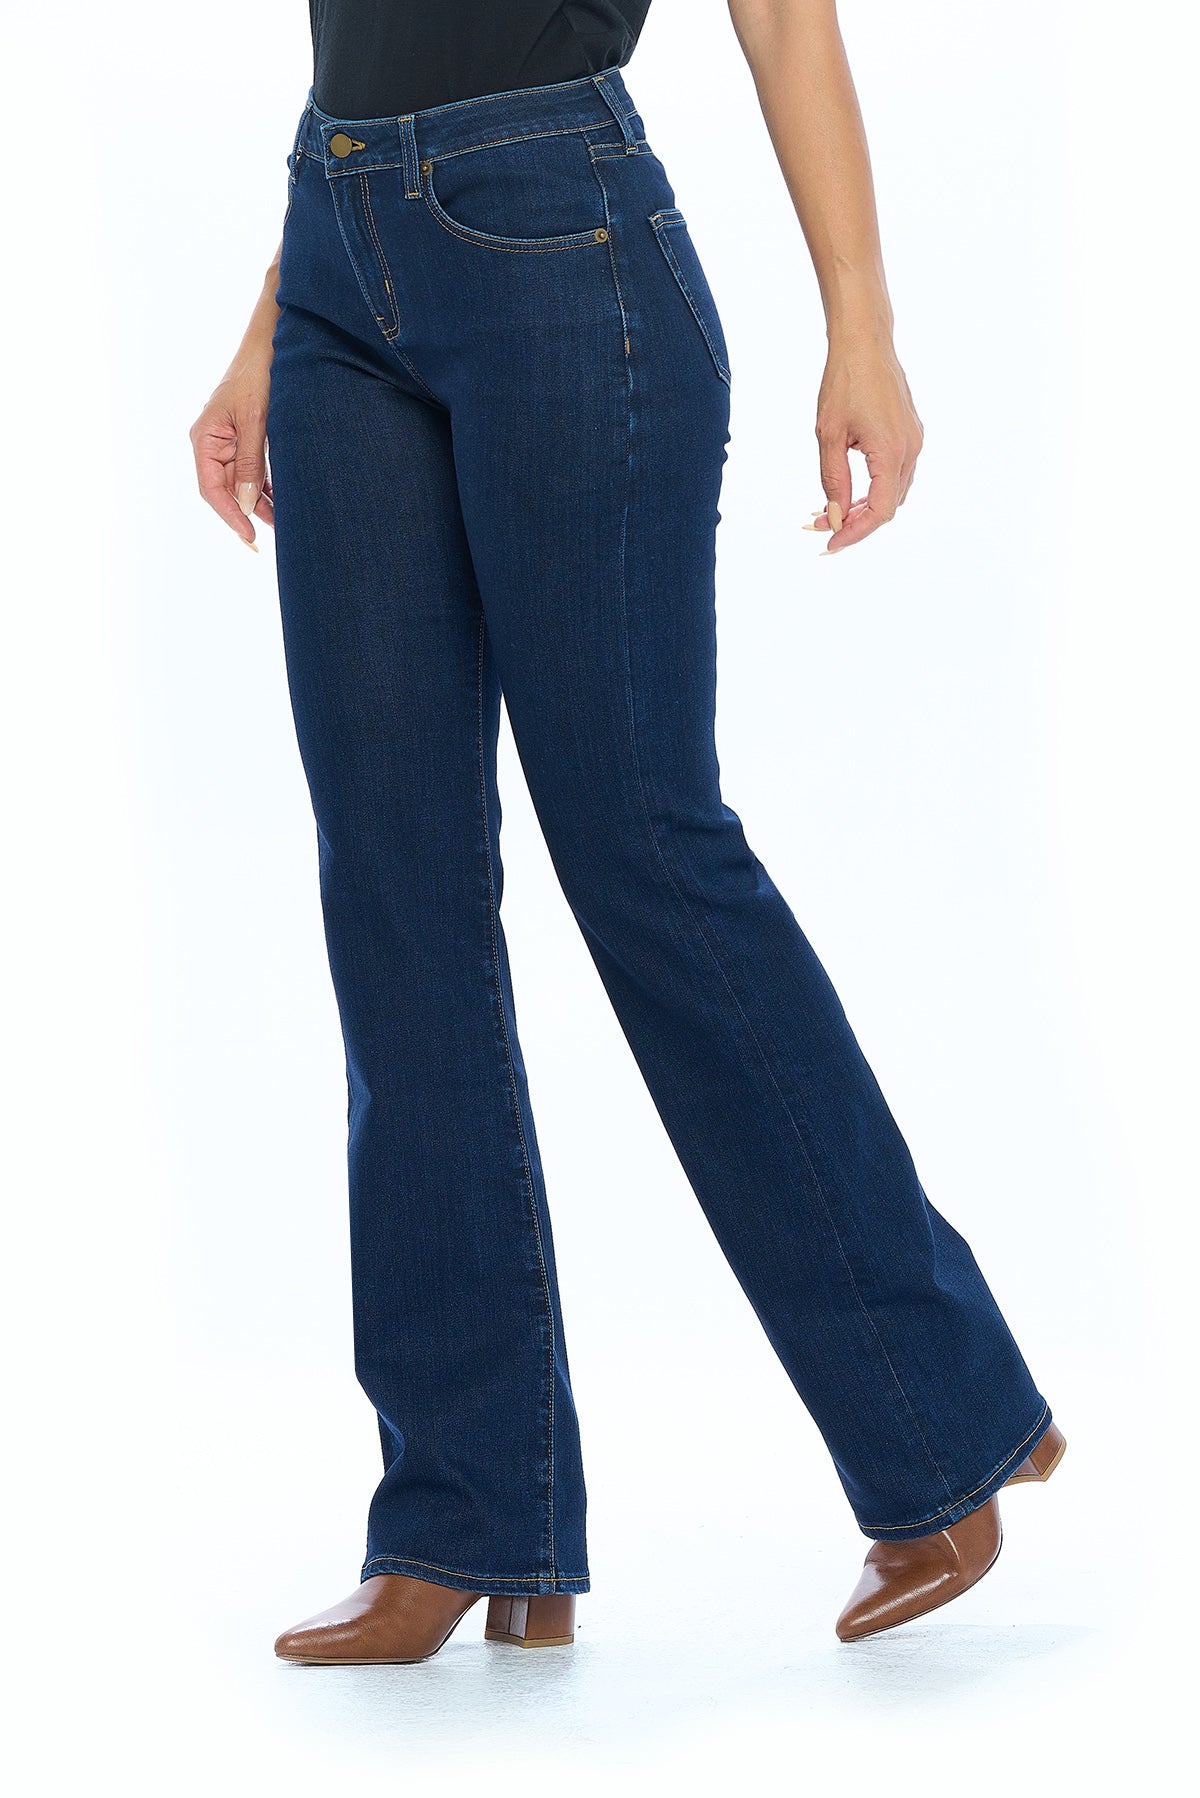 Buy KASSUALLY Women Dark Solid High Rise Bell Bottom Jeans online